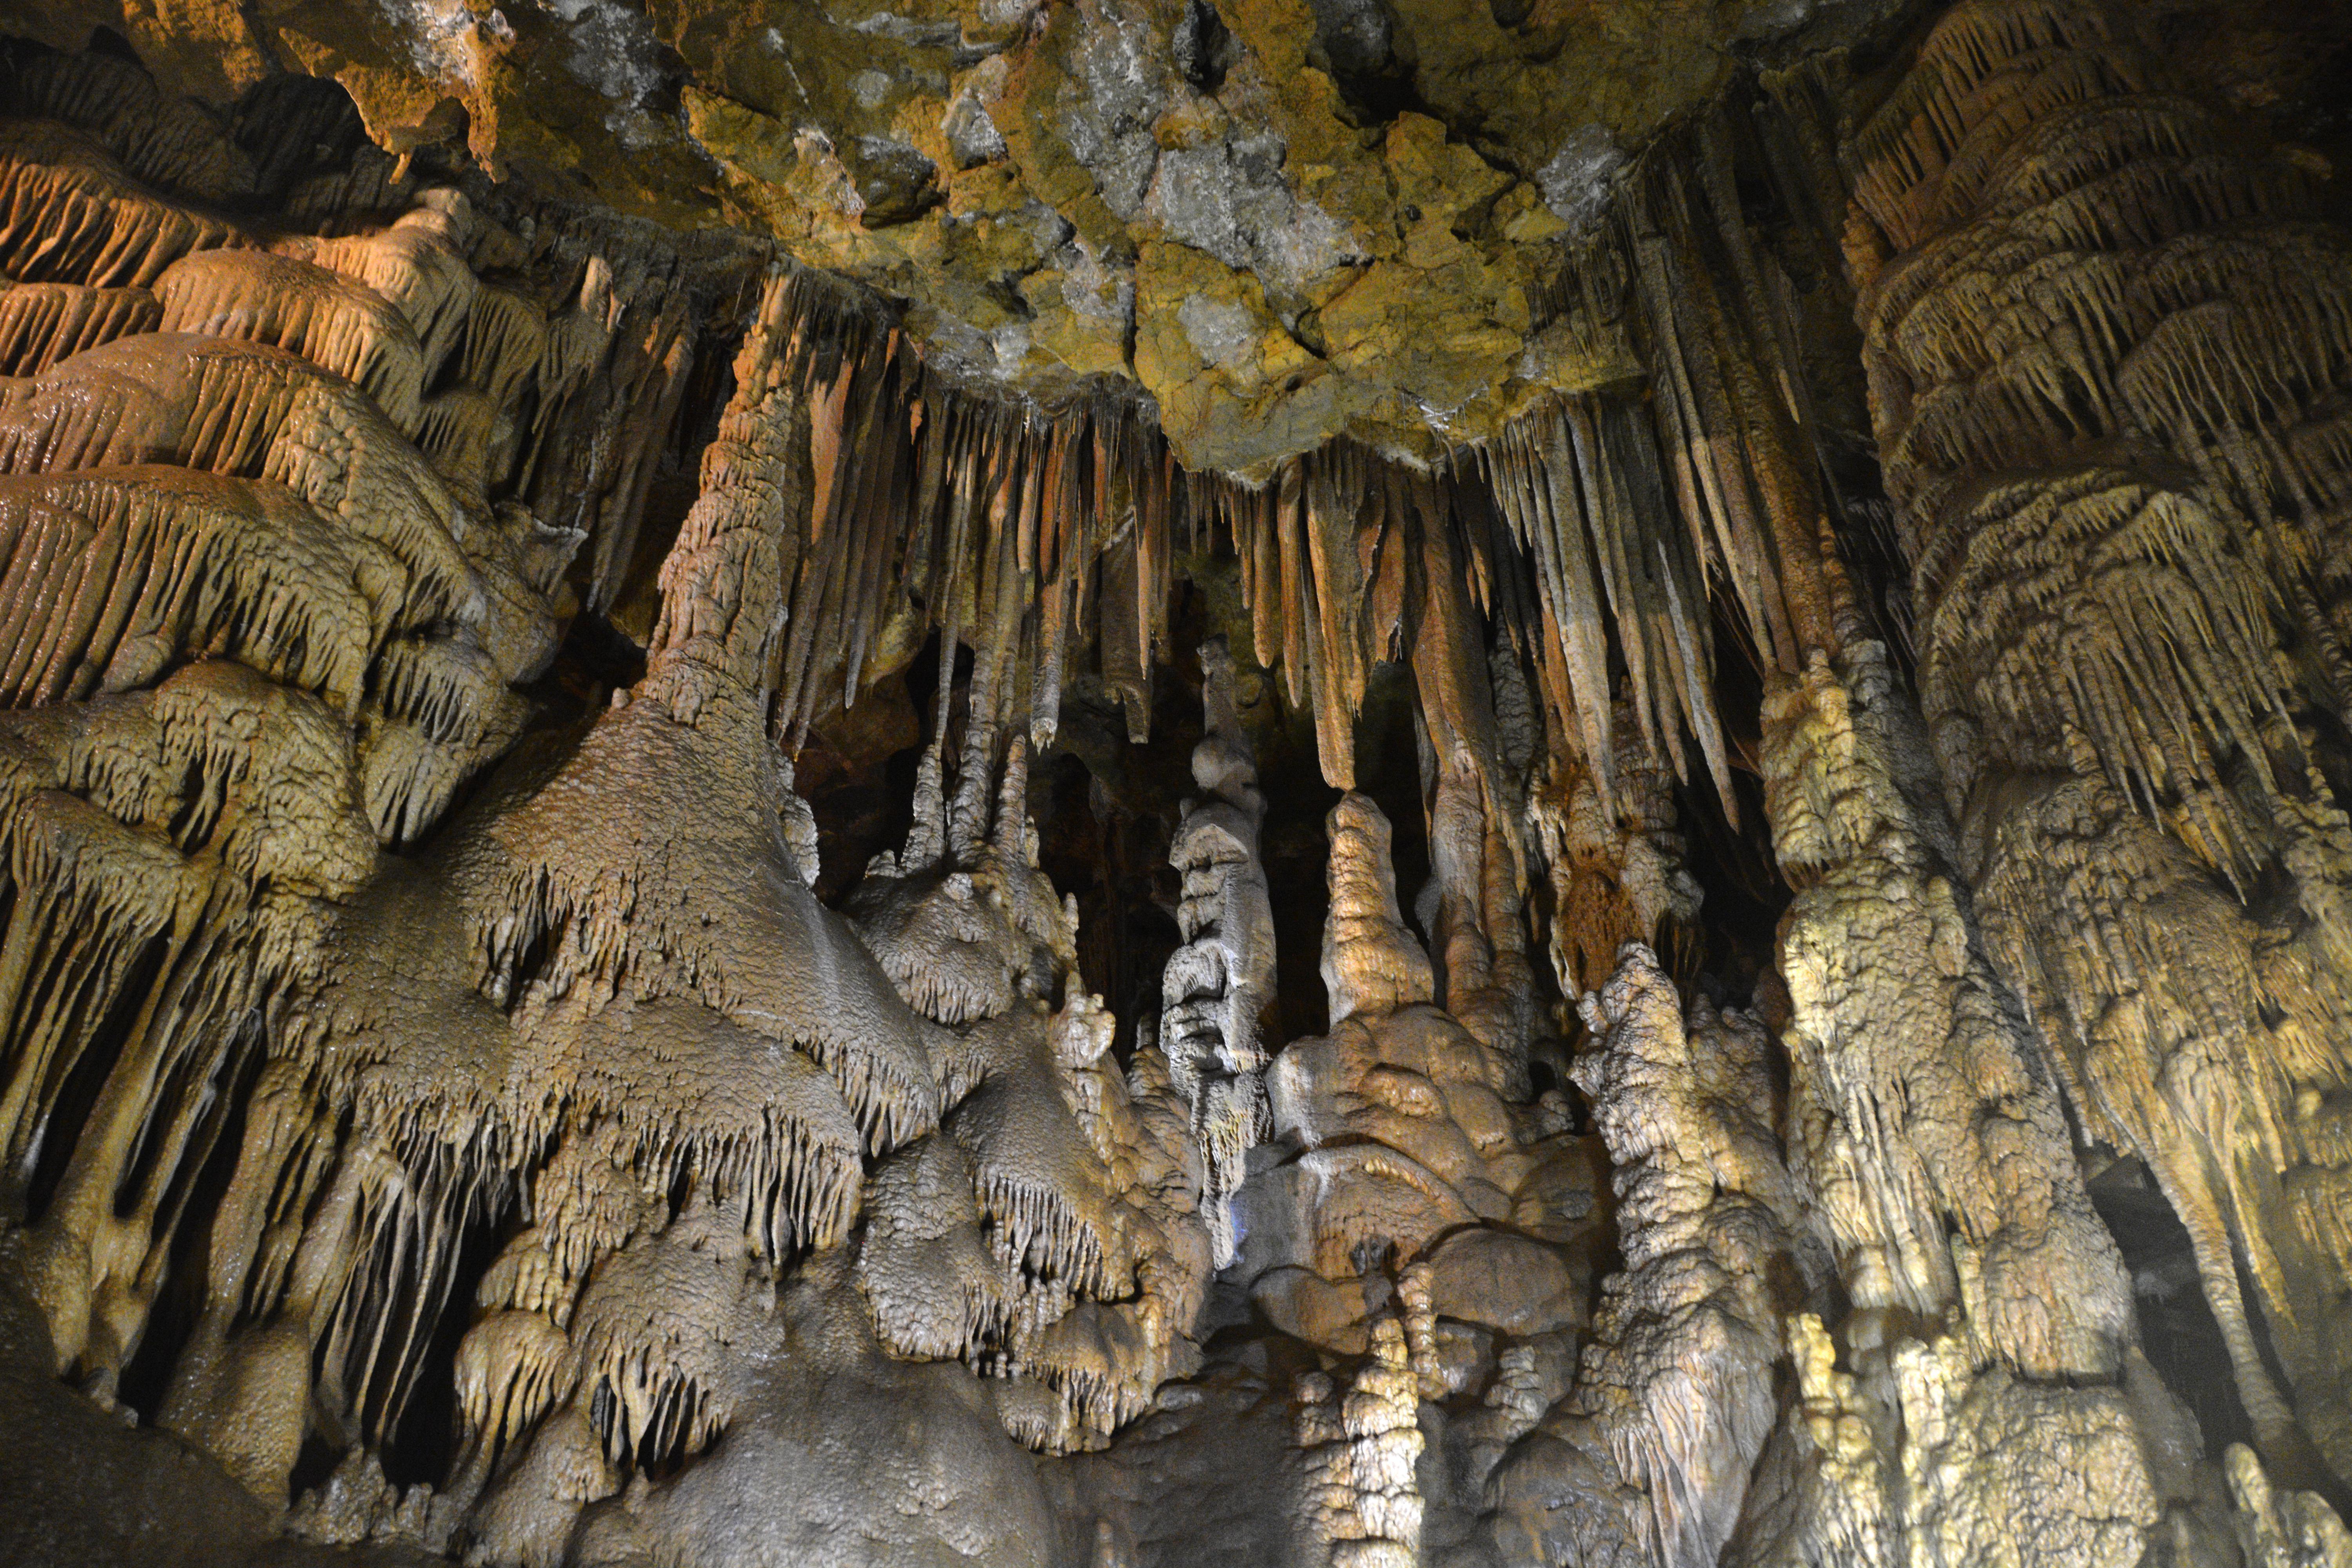 Karaca mağarasında ziyaretçi sayısı 120 bini geçti (Karaca mağarası nerede)